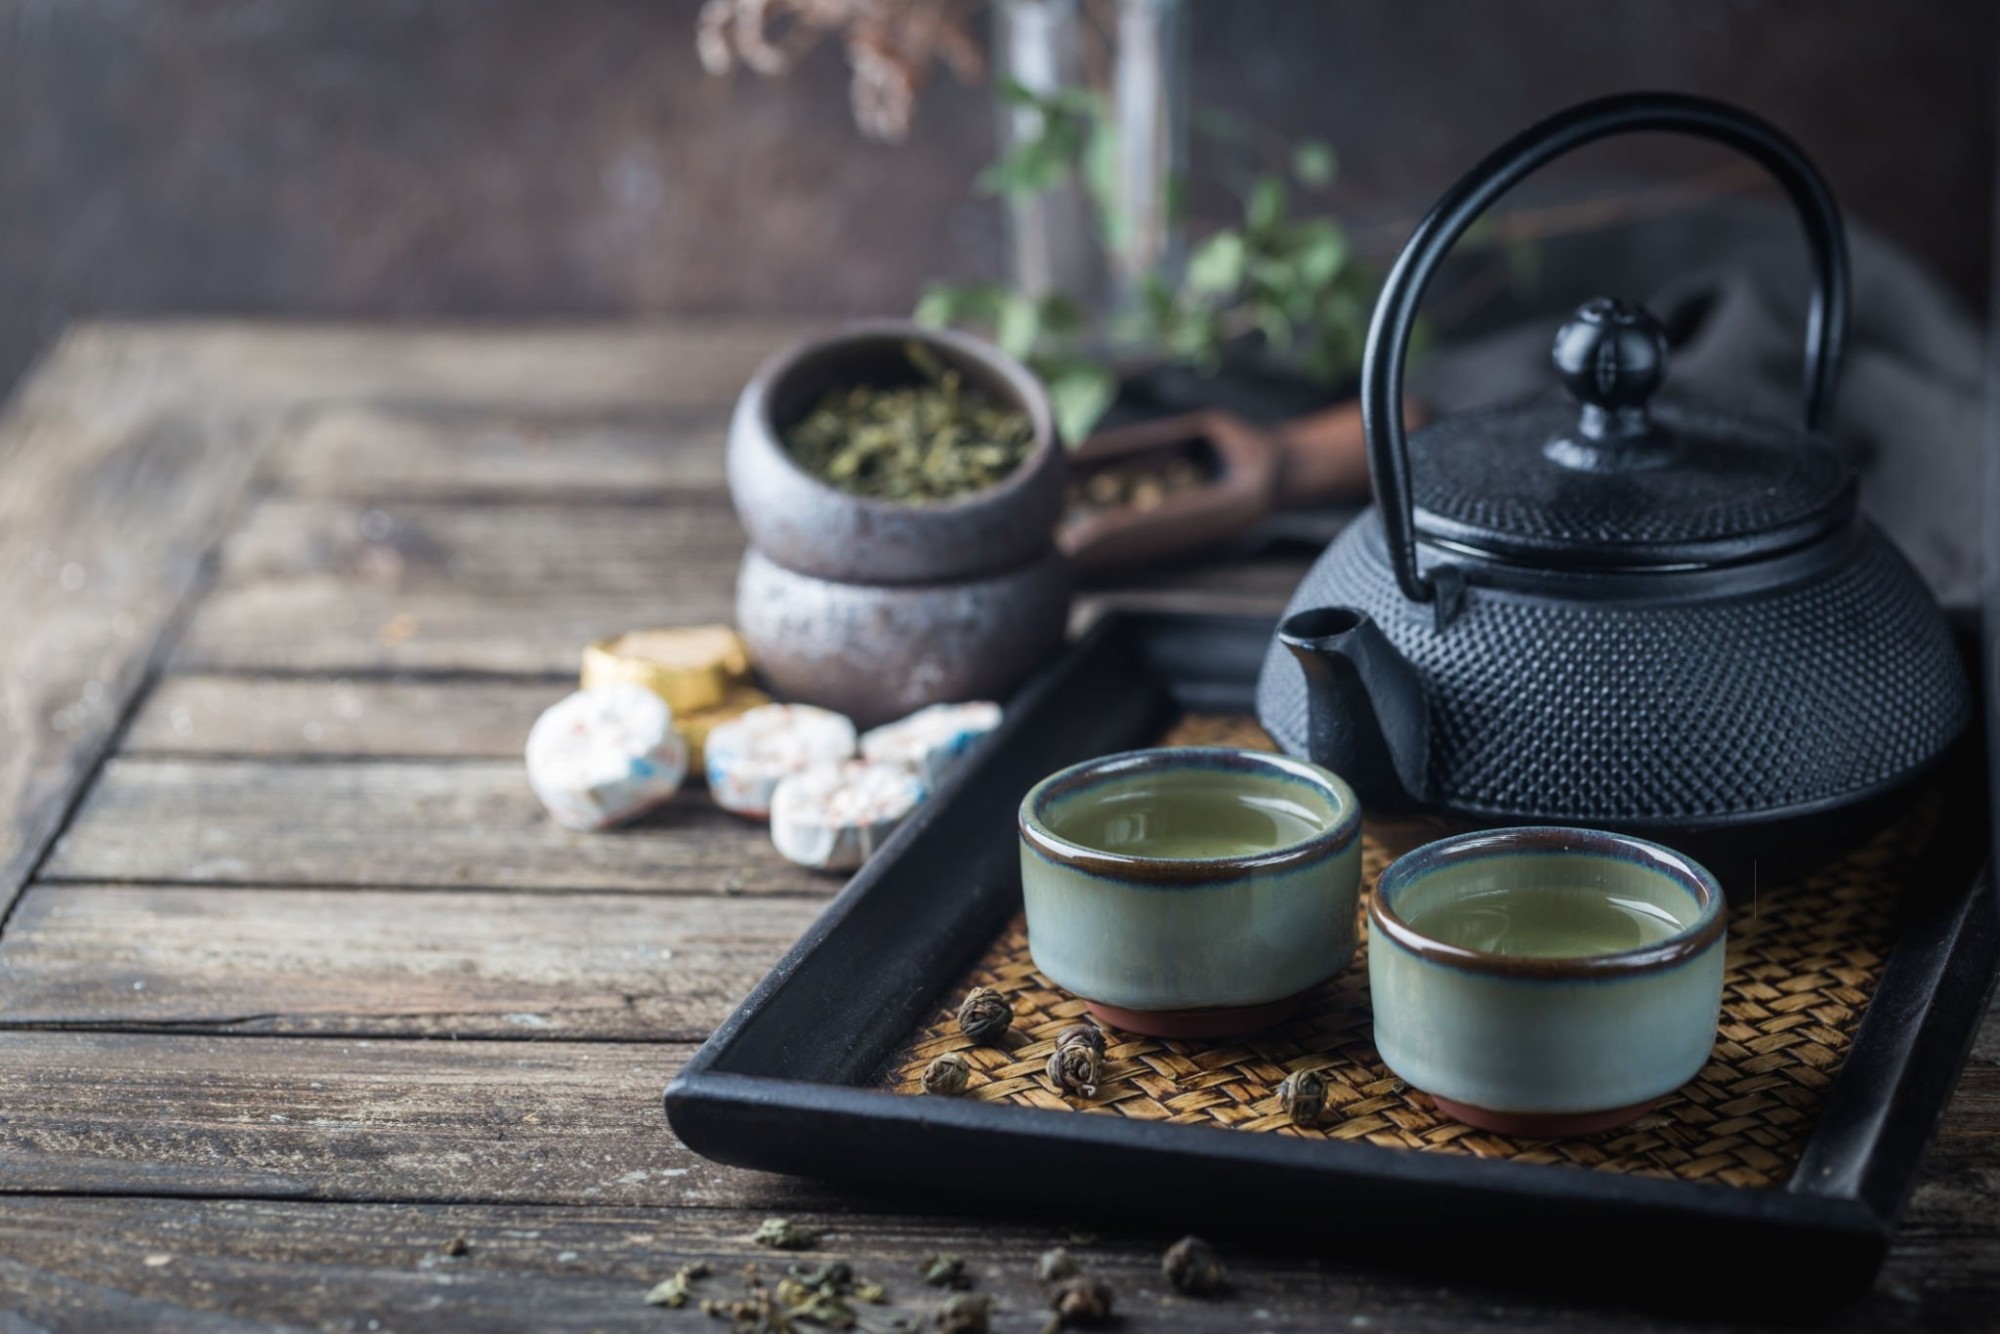 Bạn có thể tìm mua các loại trà Trung Quốc đặc trưng ở các khu chợ, cửa hàng hoặc các khu du lịch